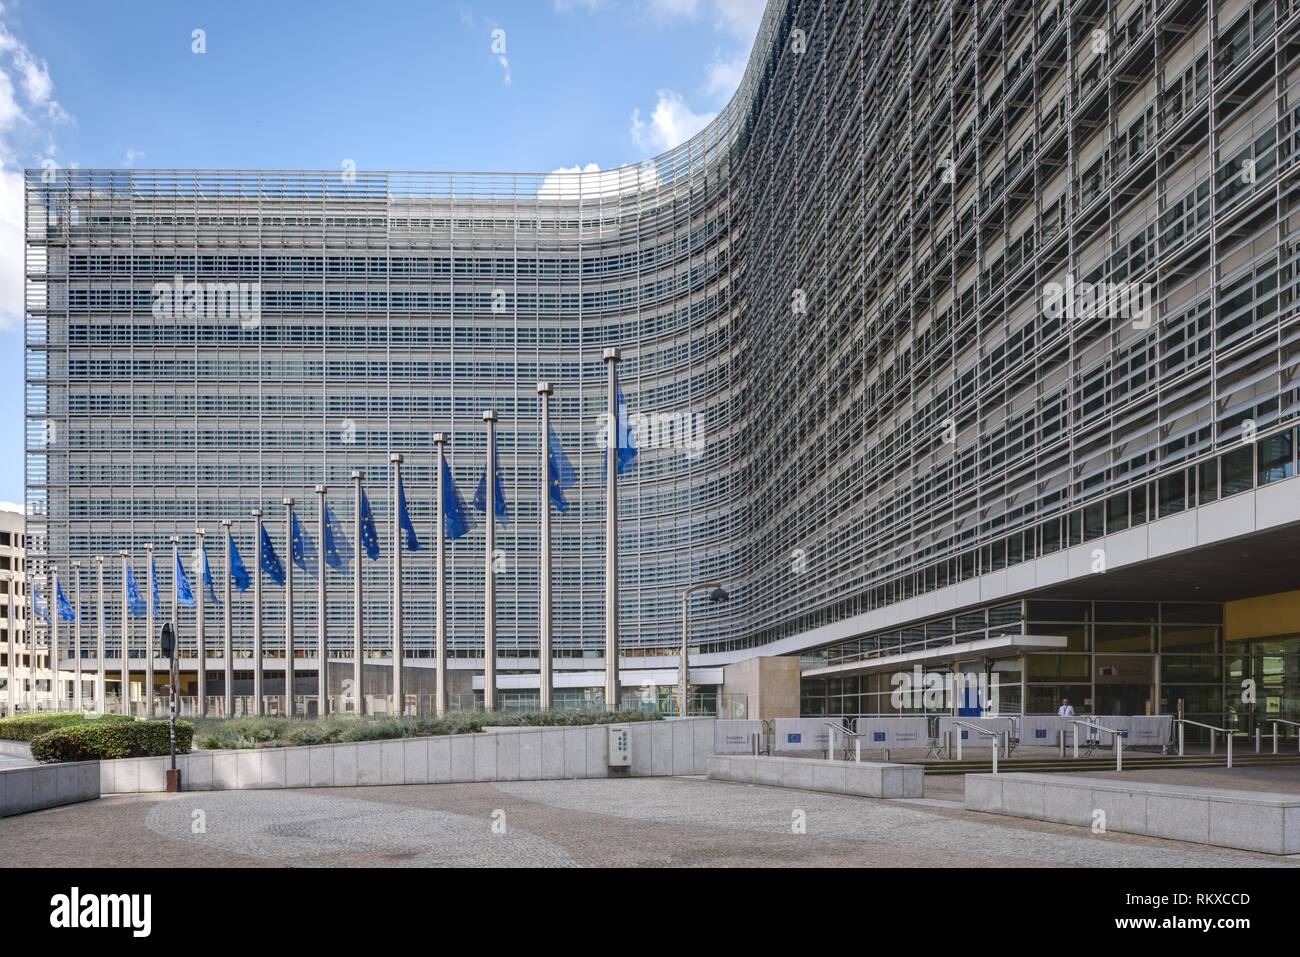 Brüssel, Europaviertel, Europäische Kommission, Berlaymont-Gebäude Das 1963 bis 1967 erbaute Berlaymont-Gebäude in Brüssel ist der Sitz der Europäisch Stock Photo